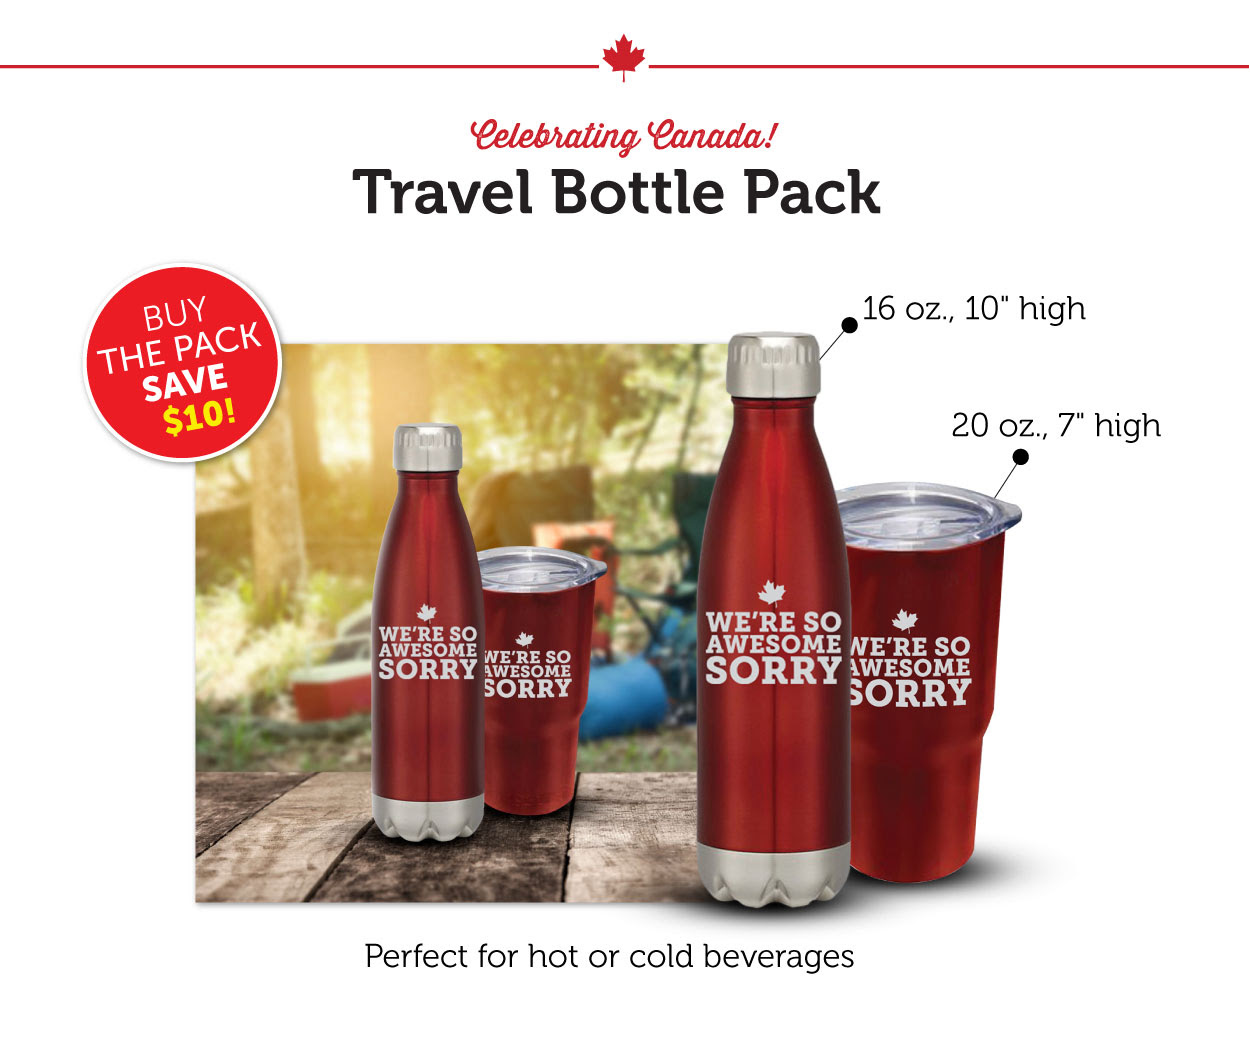 Travel Bottle Pack